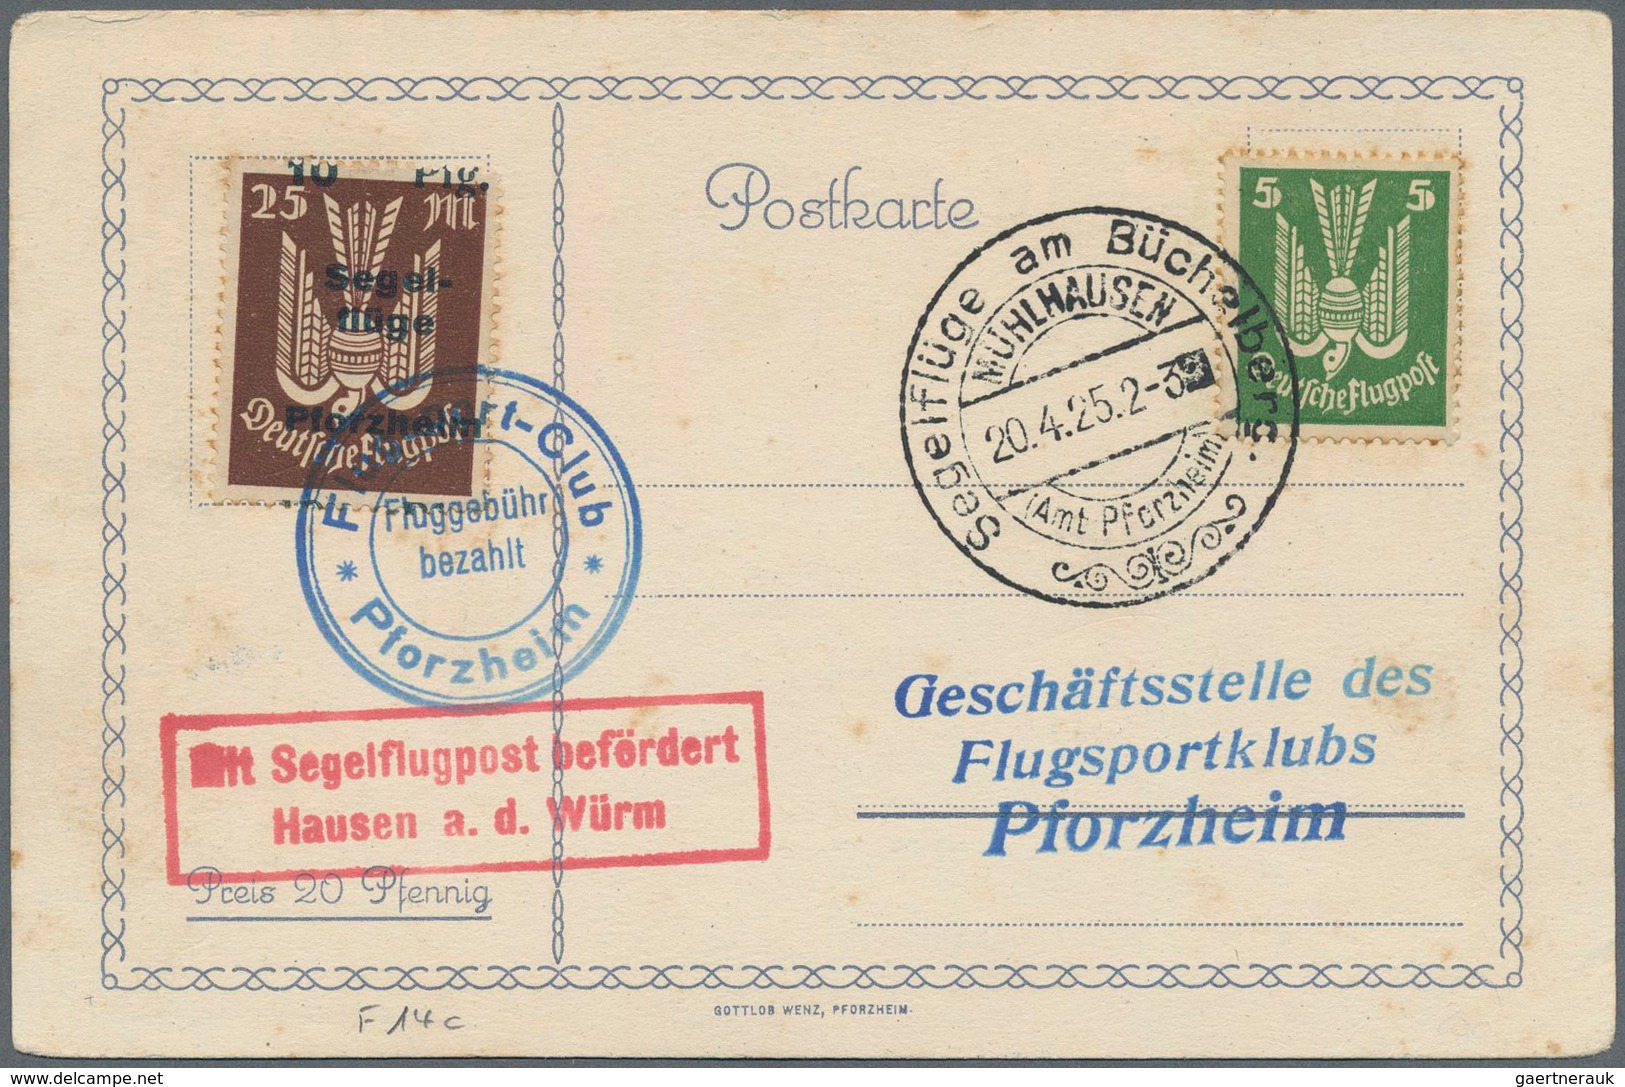 Deutsches Reich - Halbamtliche Flugmarken: 1924/25, Segelflüge am Büchelberg bei Pforzheim, acht Kar